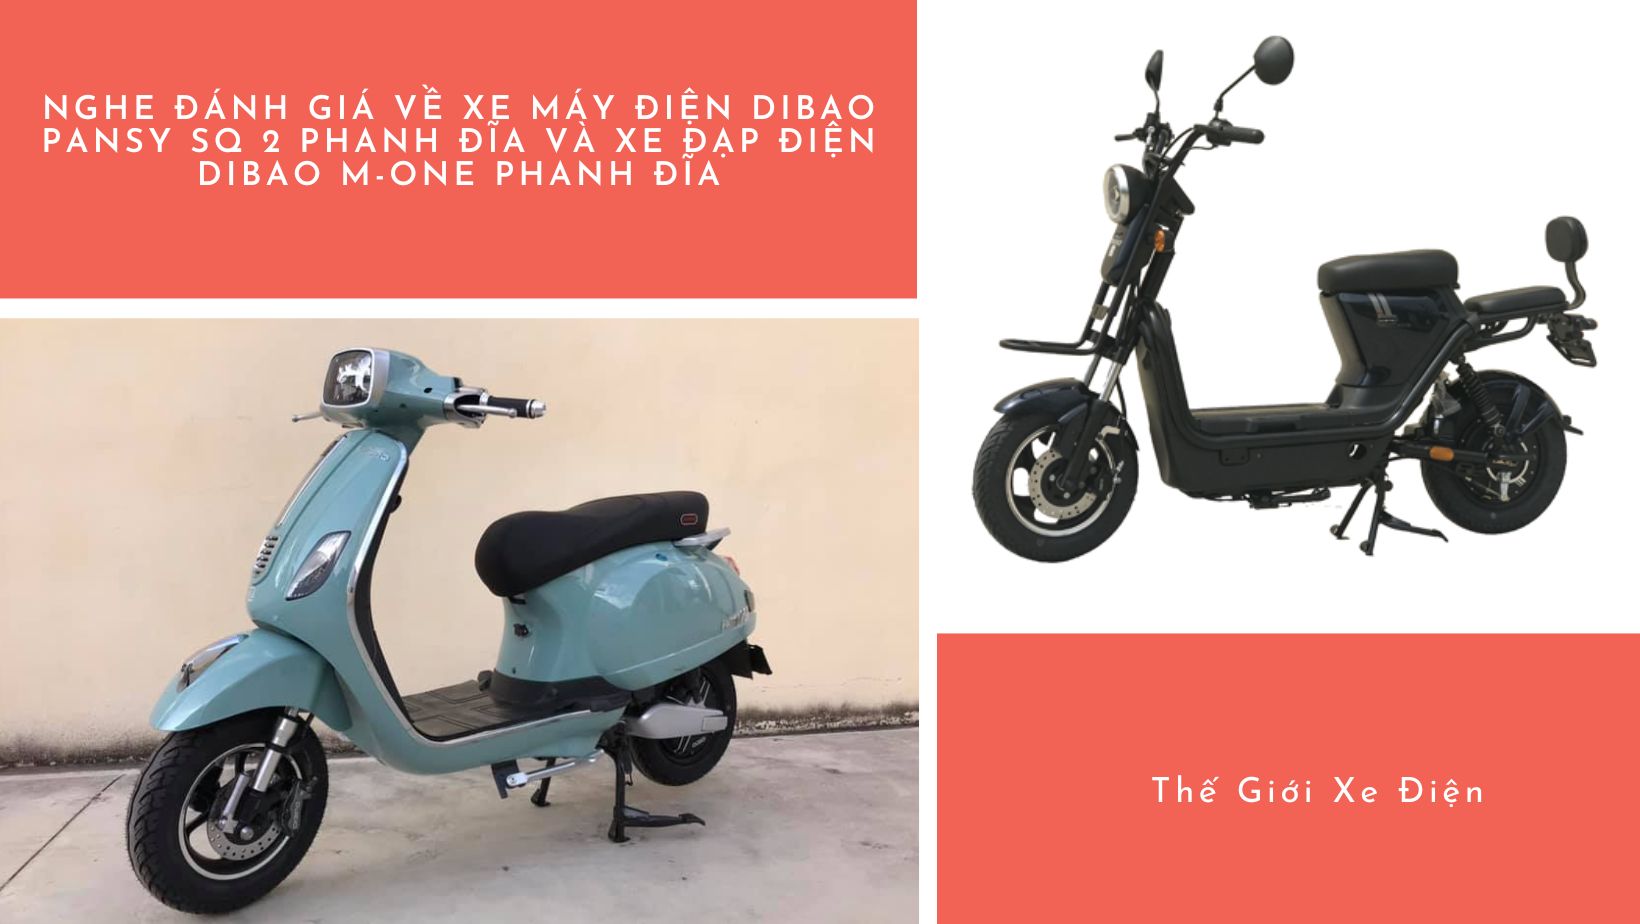 Nghe đánh giá về xe máy điện Dibao Pansy SQ 2 phanh đĩa và xe đạp điện Dibao M-One phanh đĩa